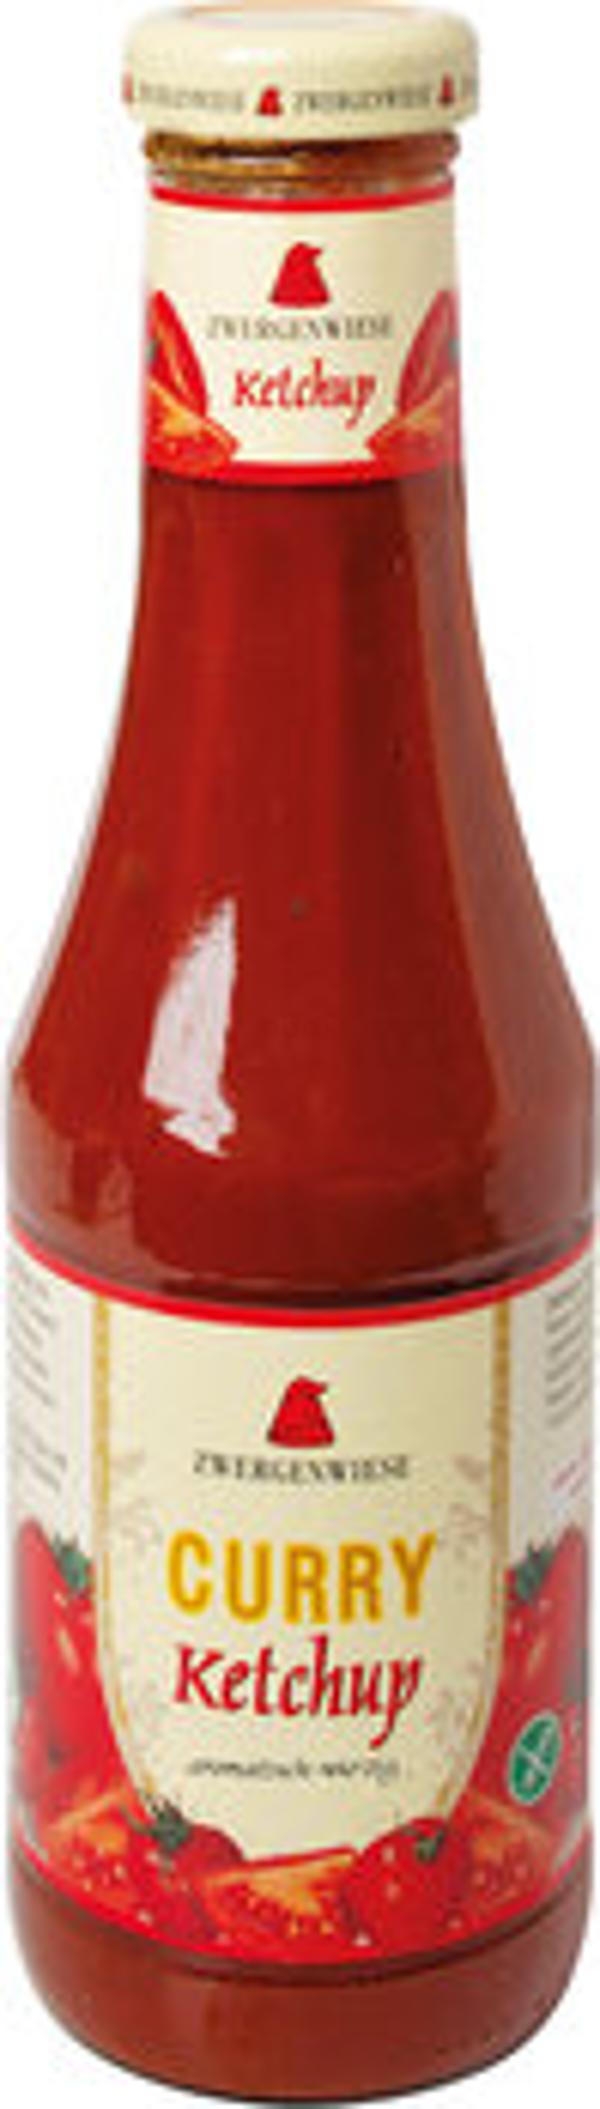 Produktfoto zu Curry Ketchup 500ml